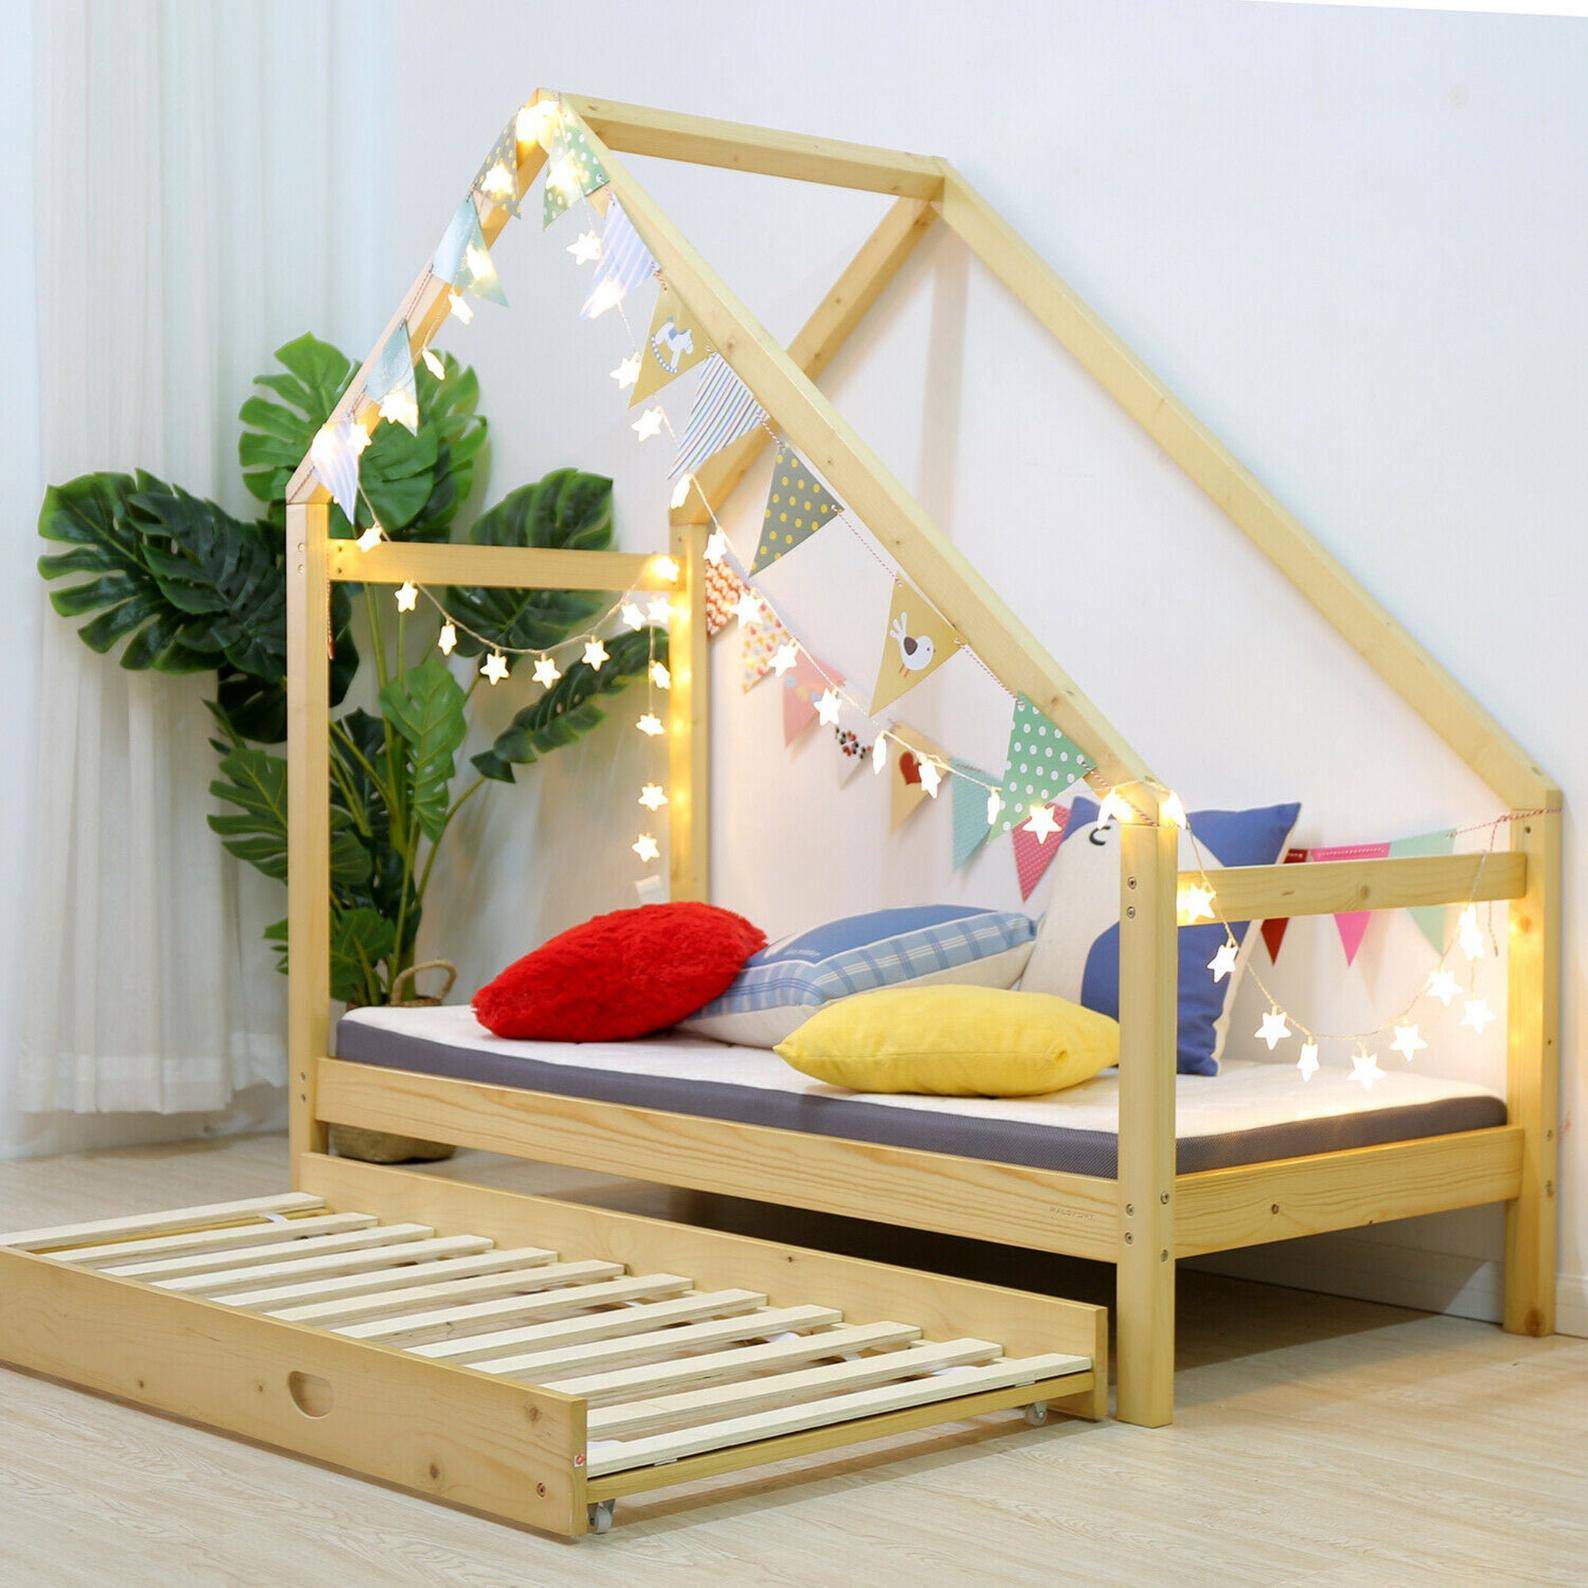 Cama infantil de madera con forma de casita de Etsy